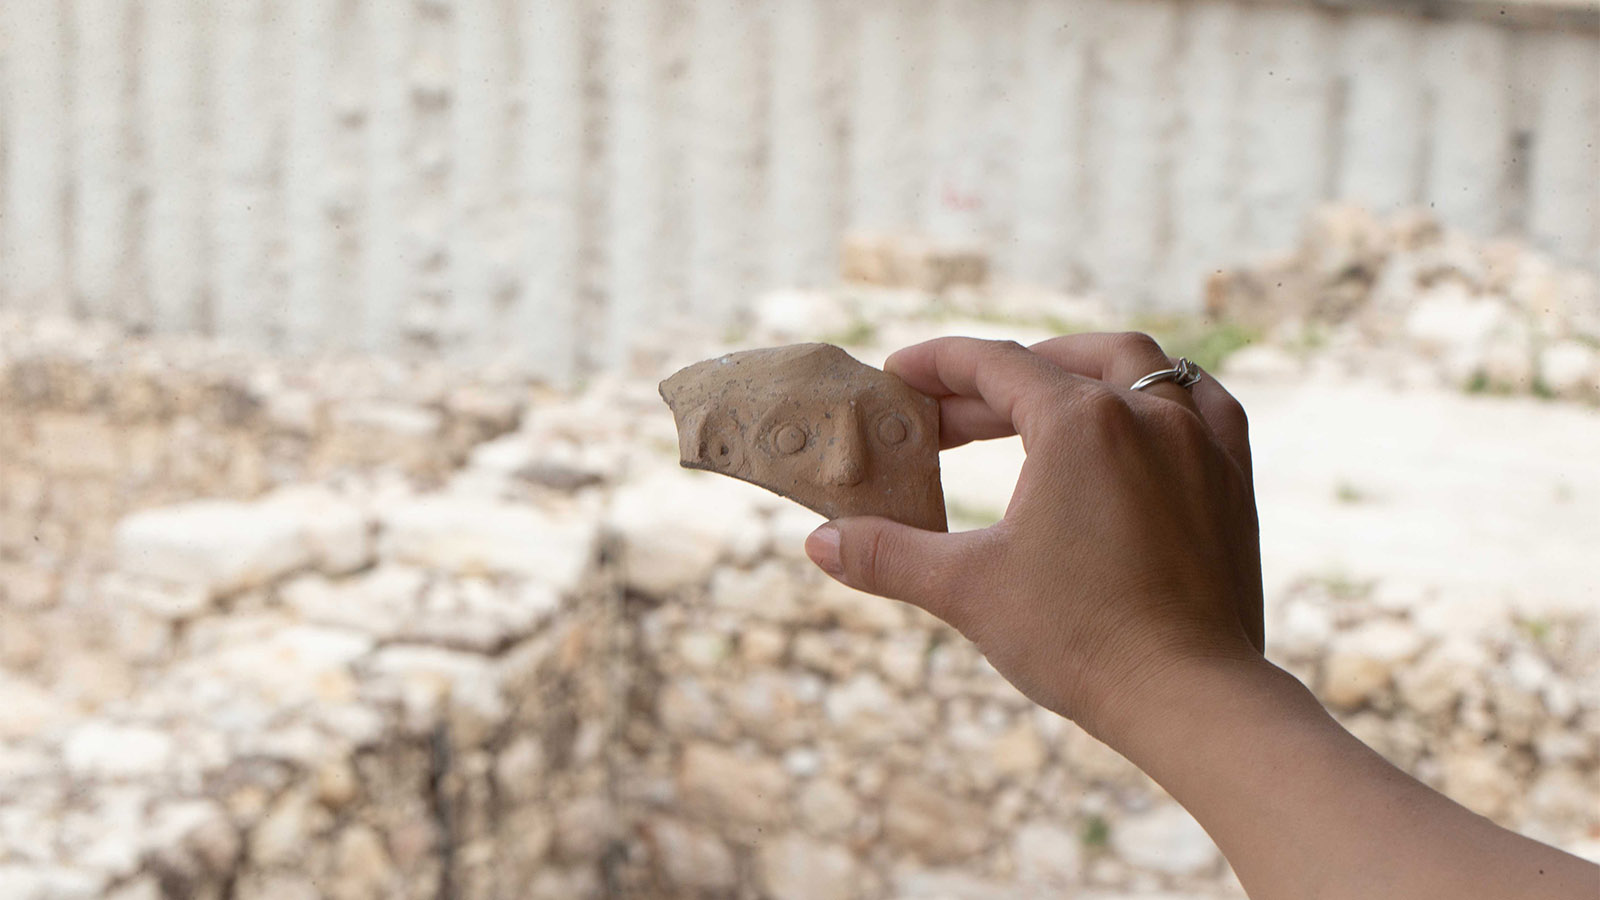 שבר קנקן המעוטר בפנים אנושיות מהתקופה הפרסית התגלה בעיר דוד ונחשף לכבוד פורים (צילום: אליהו ינאי, עיר דוד)